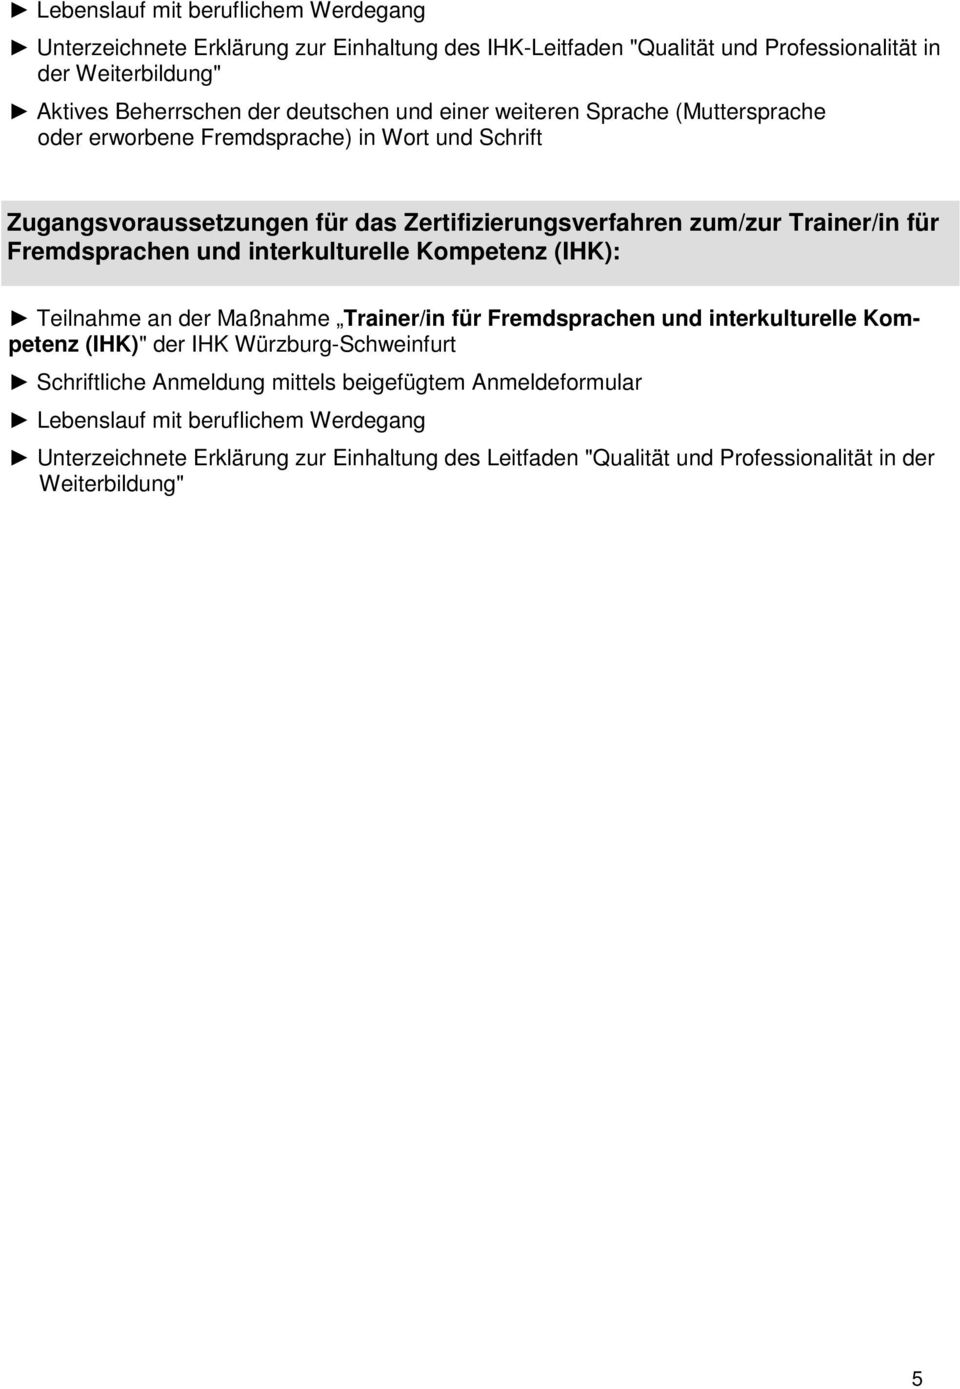 Fremdsprachen und interkulturelle Kompetenz (IHK): Teilnahme an der Maßnahme Trainer/in für Fremdsprachen und interkulturelle Kompetenz (IHK)" der IHK Würzburg-Schweinfurt